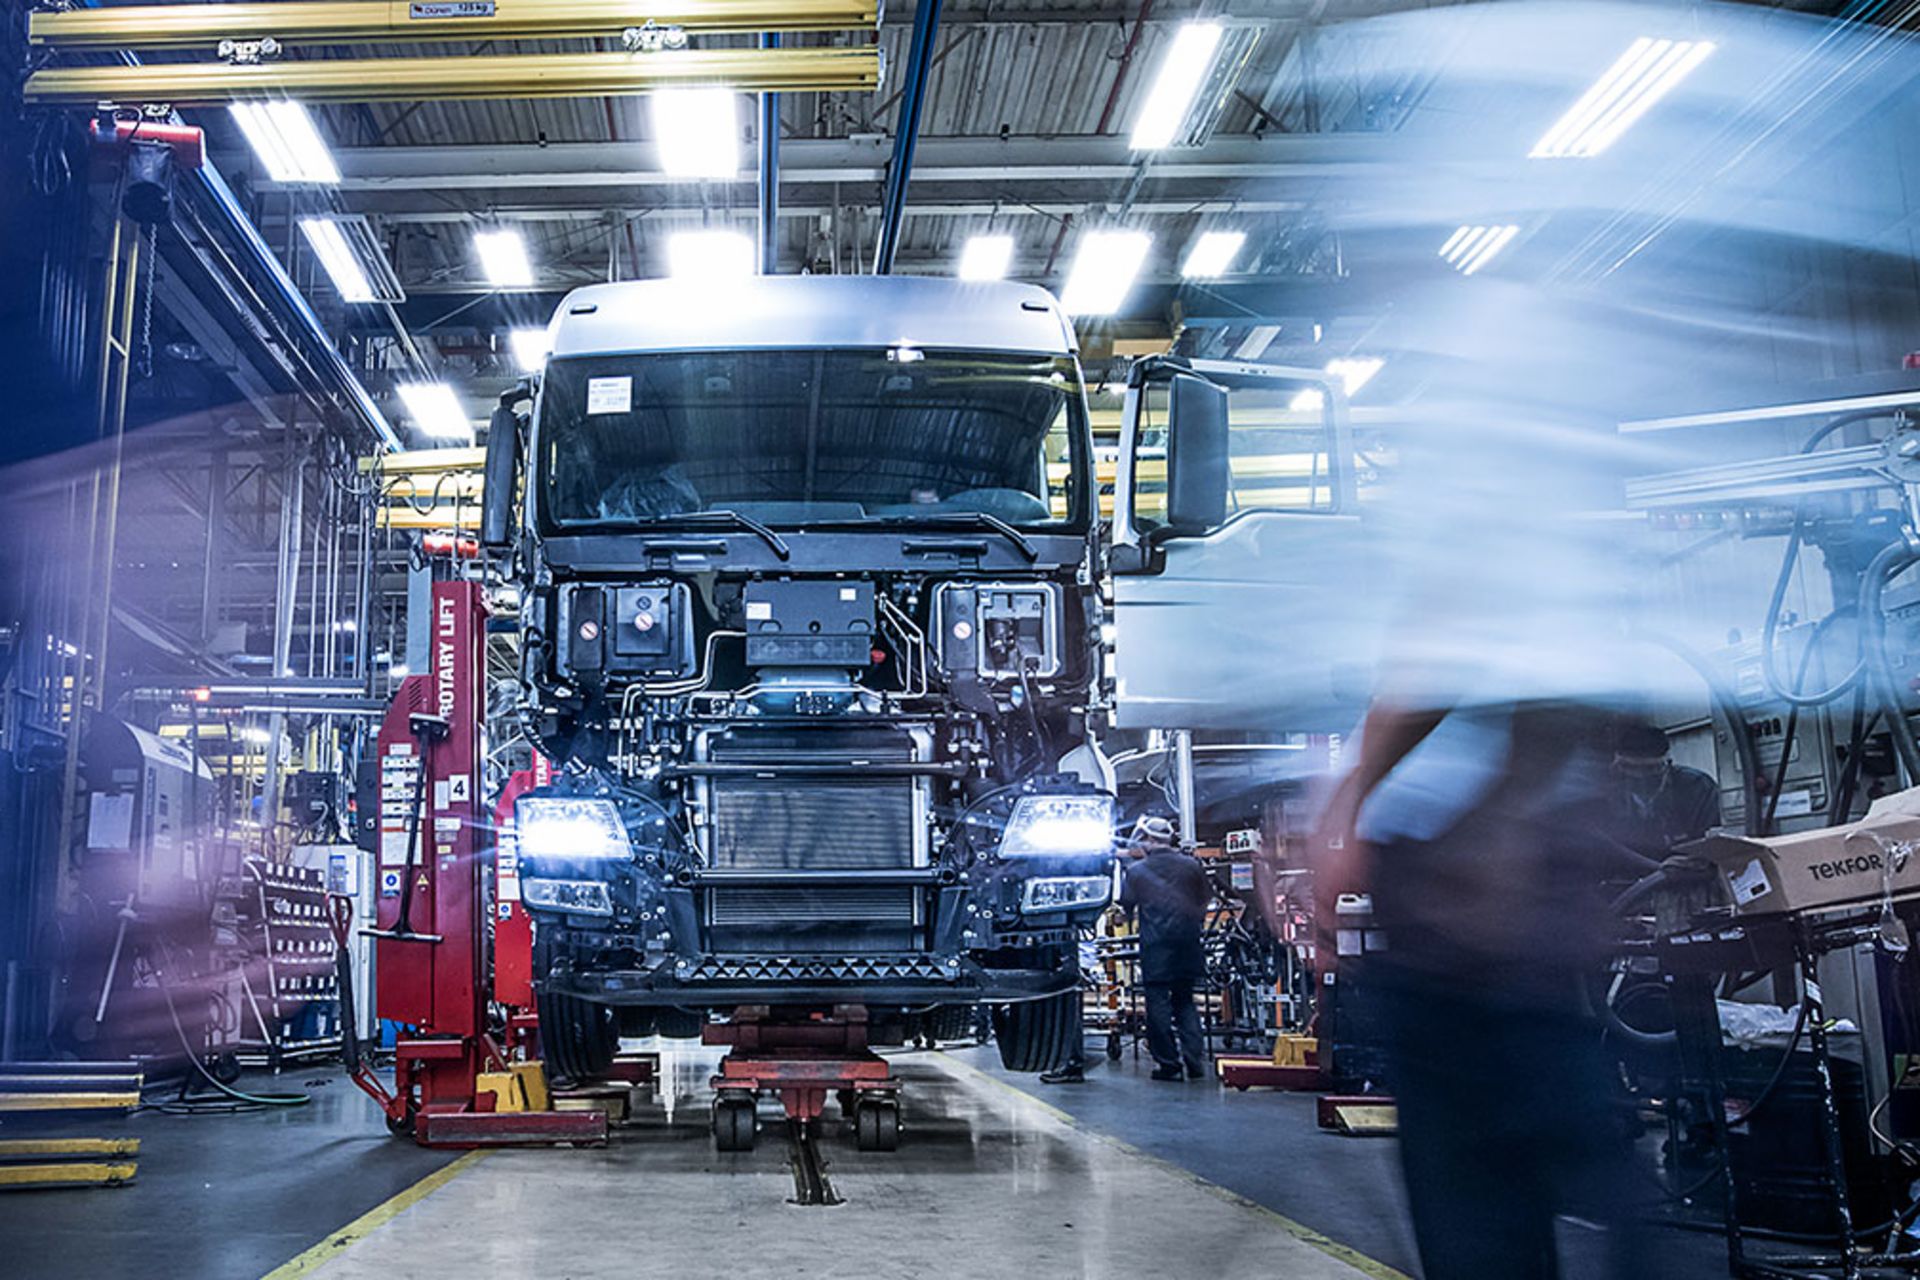 Im brasilianischen Werk Resende baut die TRATON Marke Volkswagen Caminhões e Ônibus (VWCO) die Lkw der Baureihe Meteor in einer vollkommen neuen Produktionsanlage.
                 